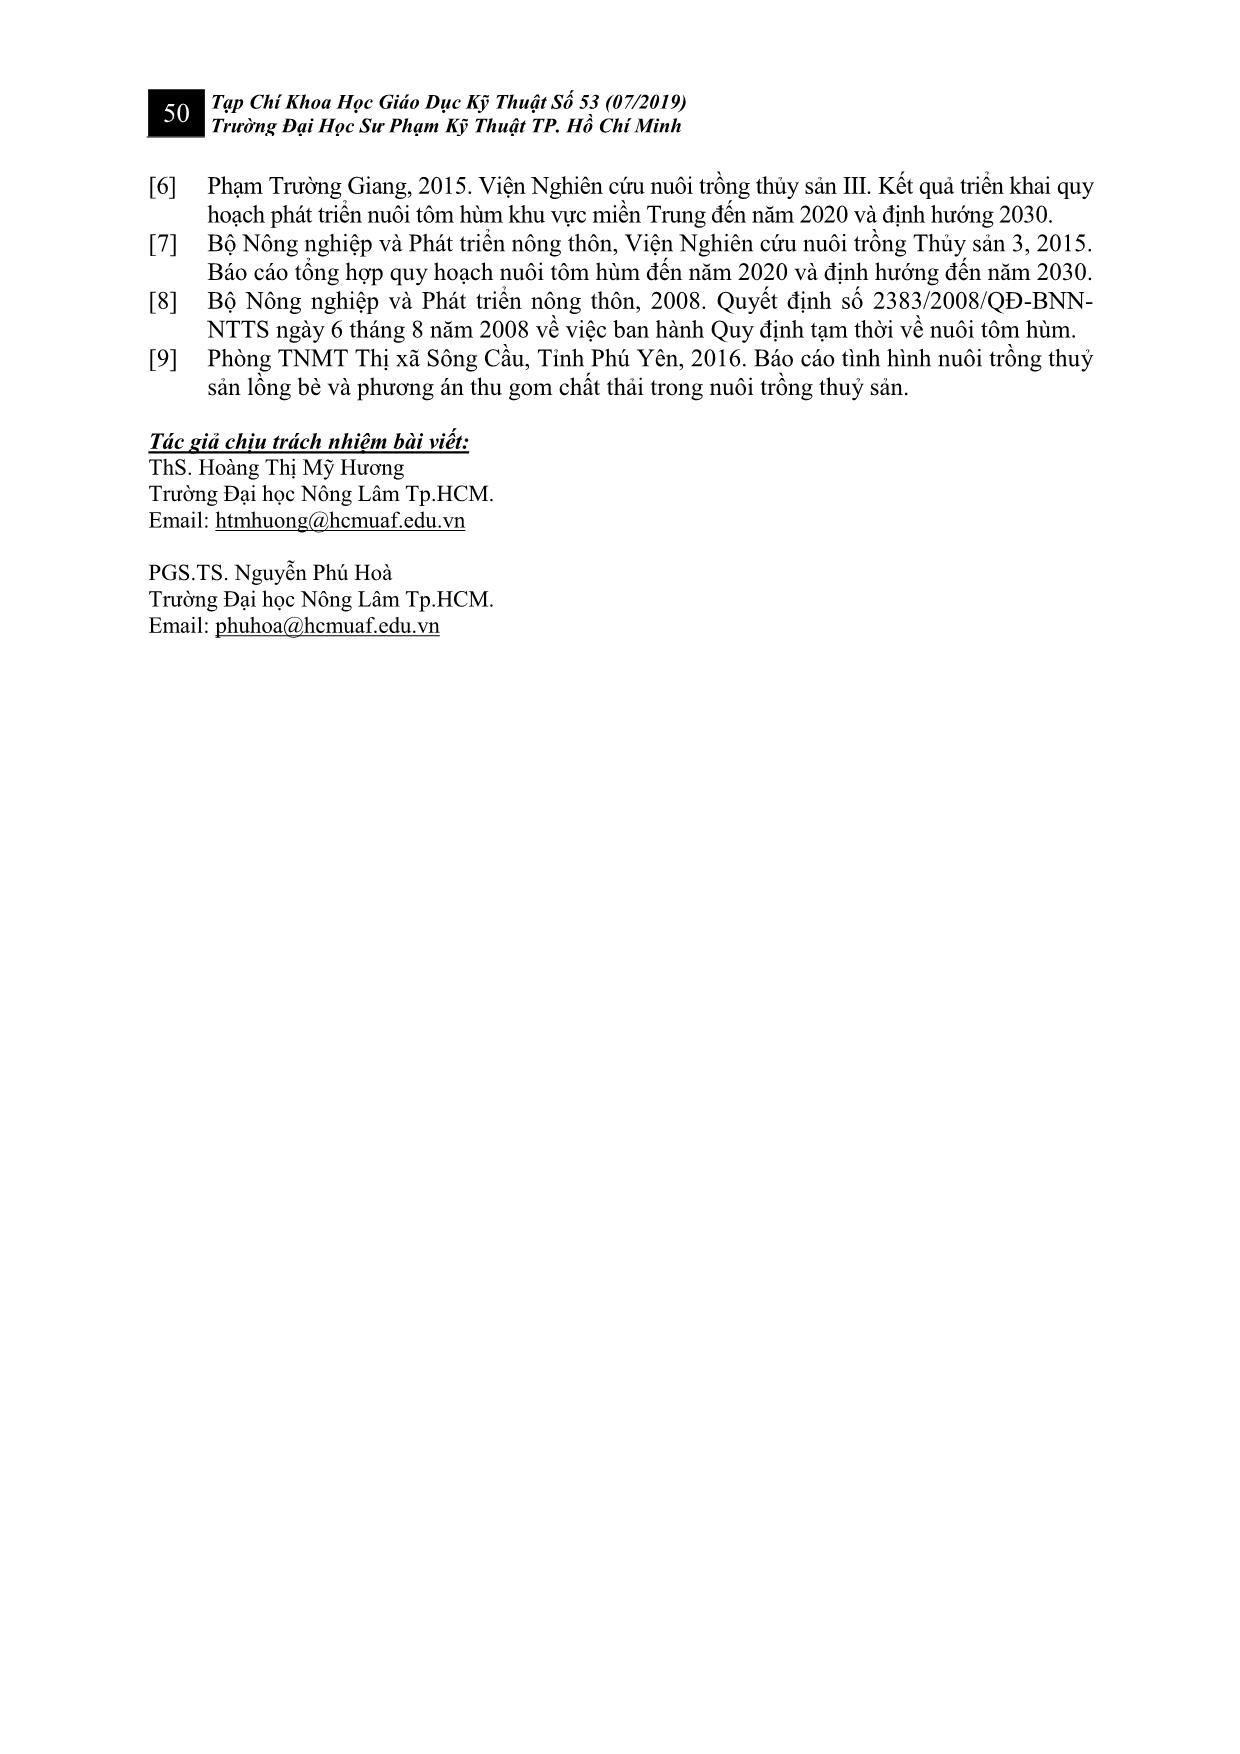 Nghiên cứu đánh giá hiện trạng và mức độ nhận thức của người nuôi tại vùng nuôi tôm hùm lồng bè thuộc vịnh Xuân Đài tỉnh Phú Yên trang 10